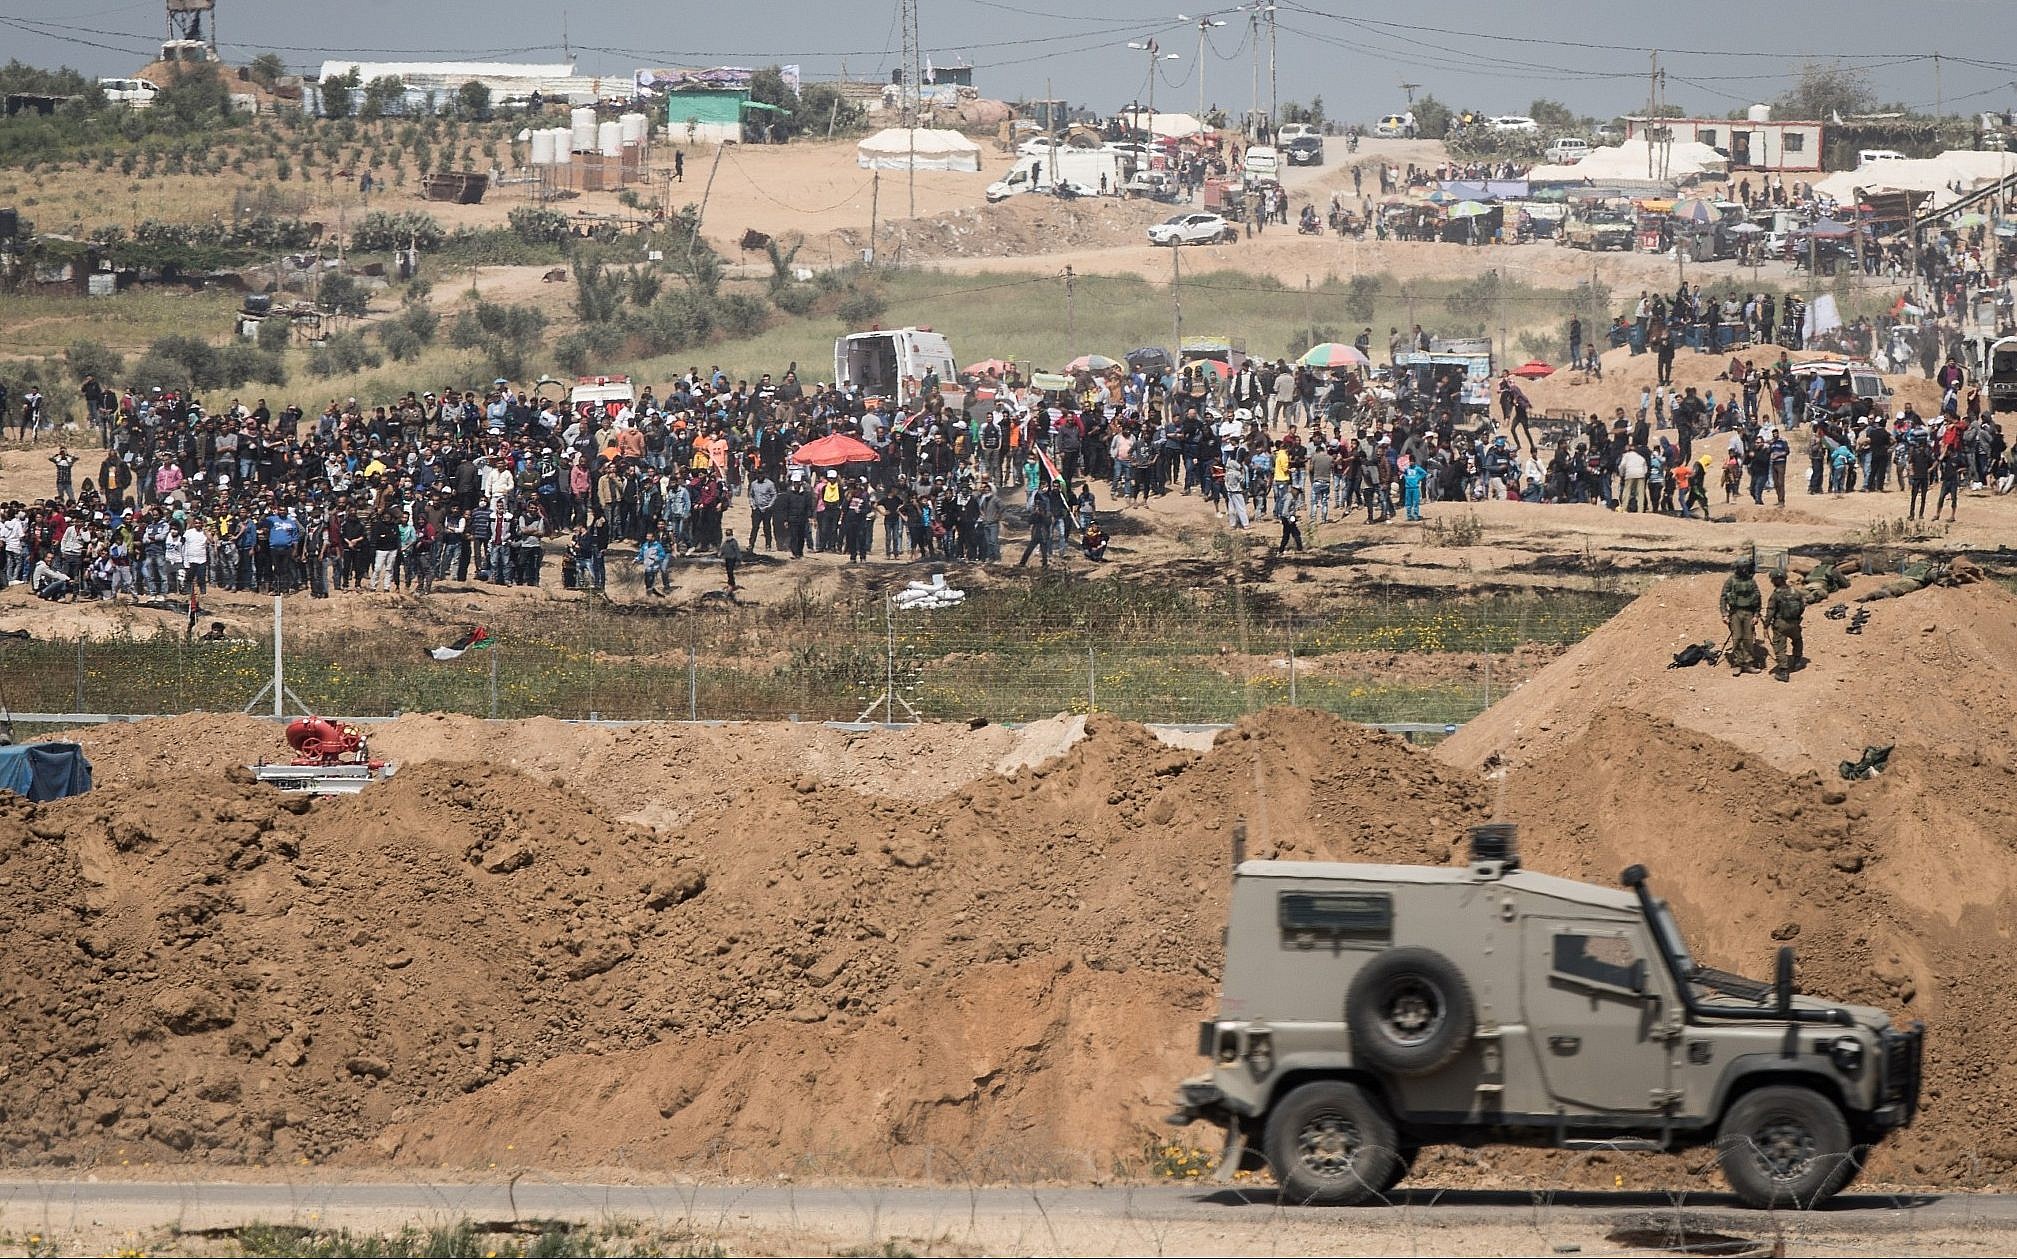 israel-sends-troop-reinforcements-to-gaza-west-bank-ahead-of-us